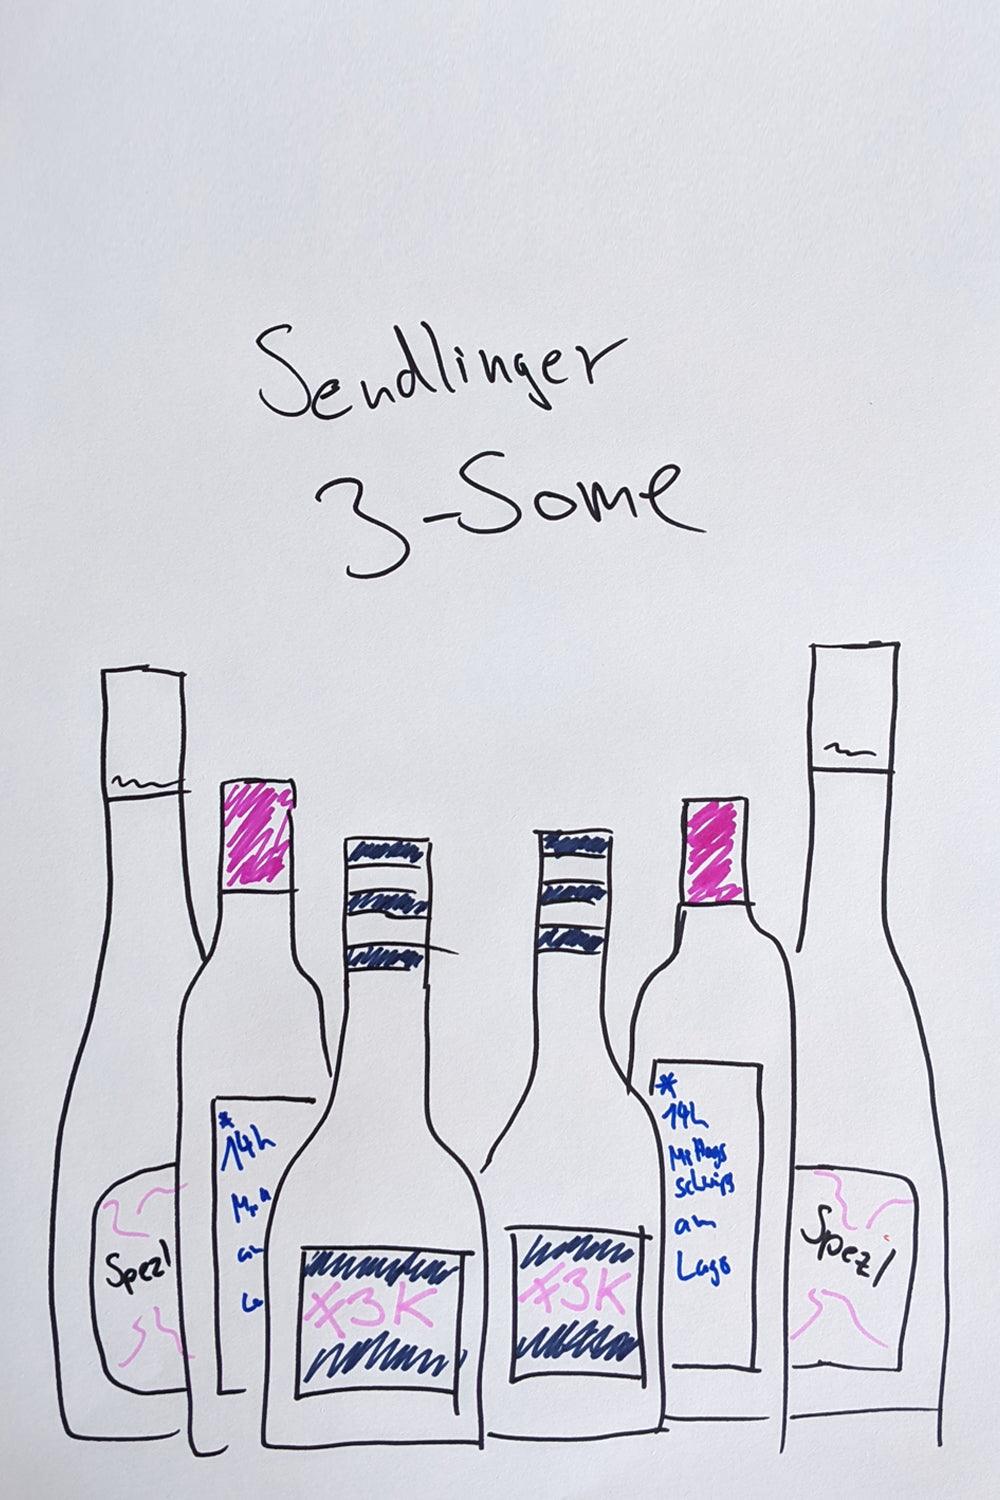 "Sendlinger 3some" - Weinpaket